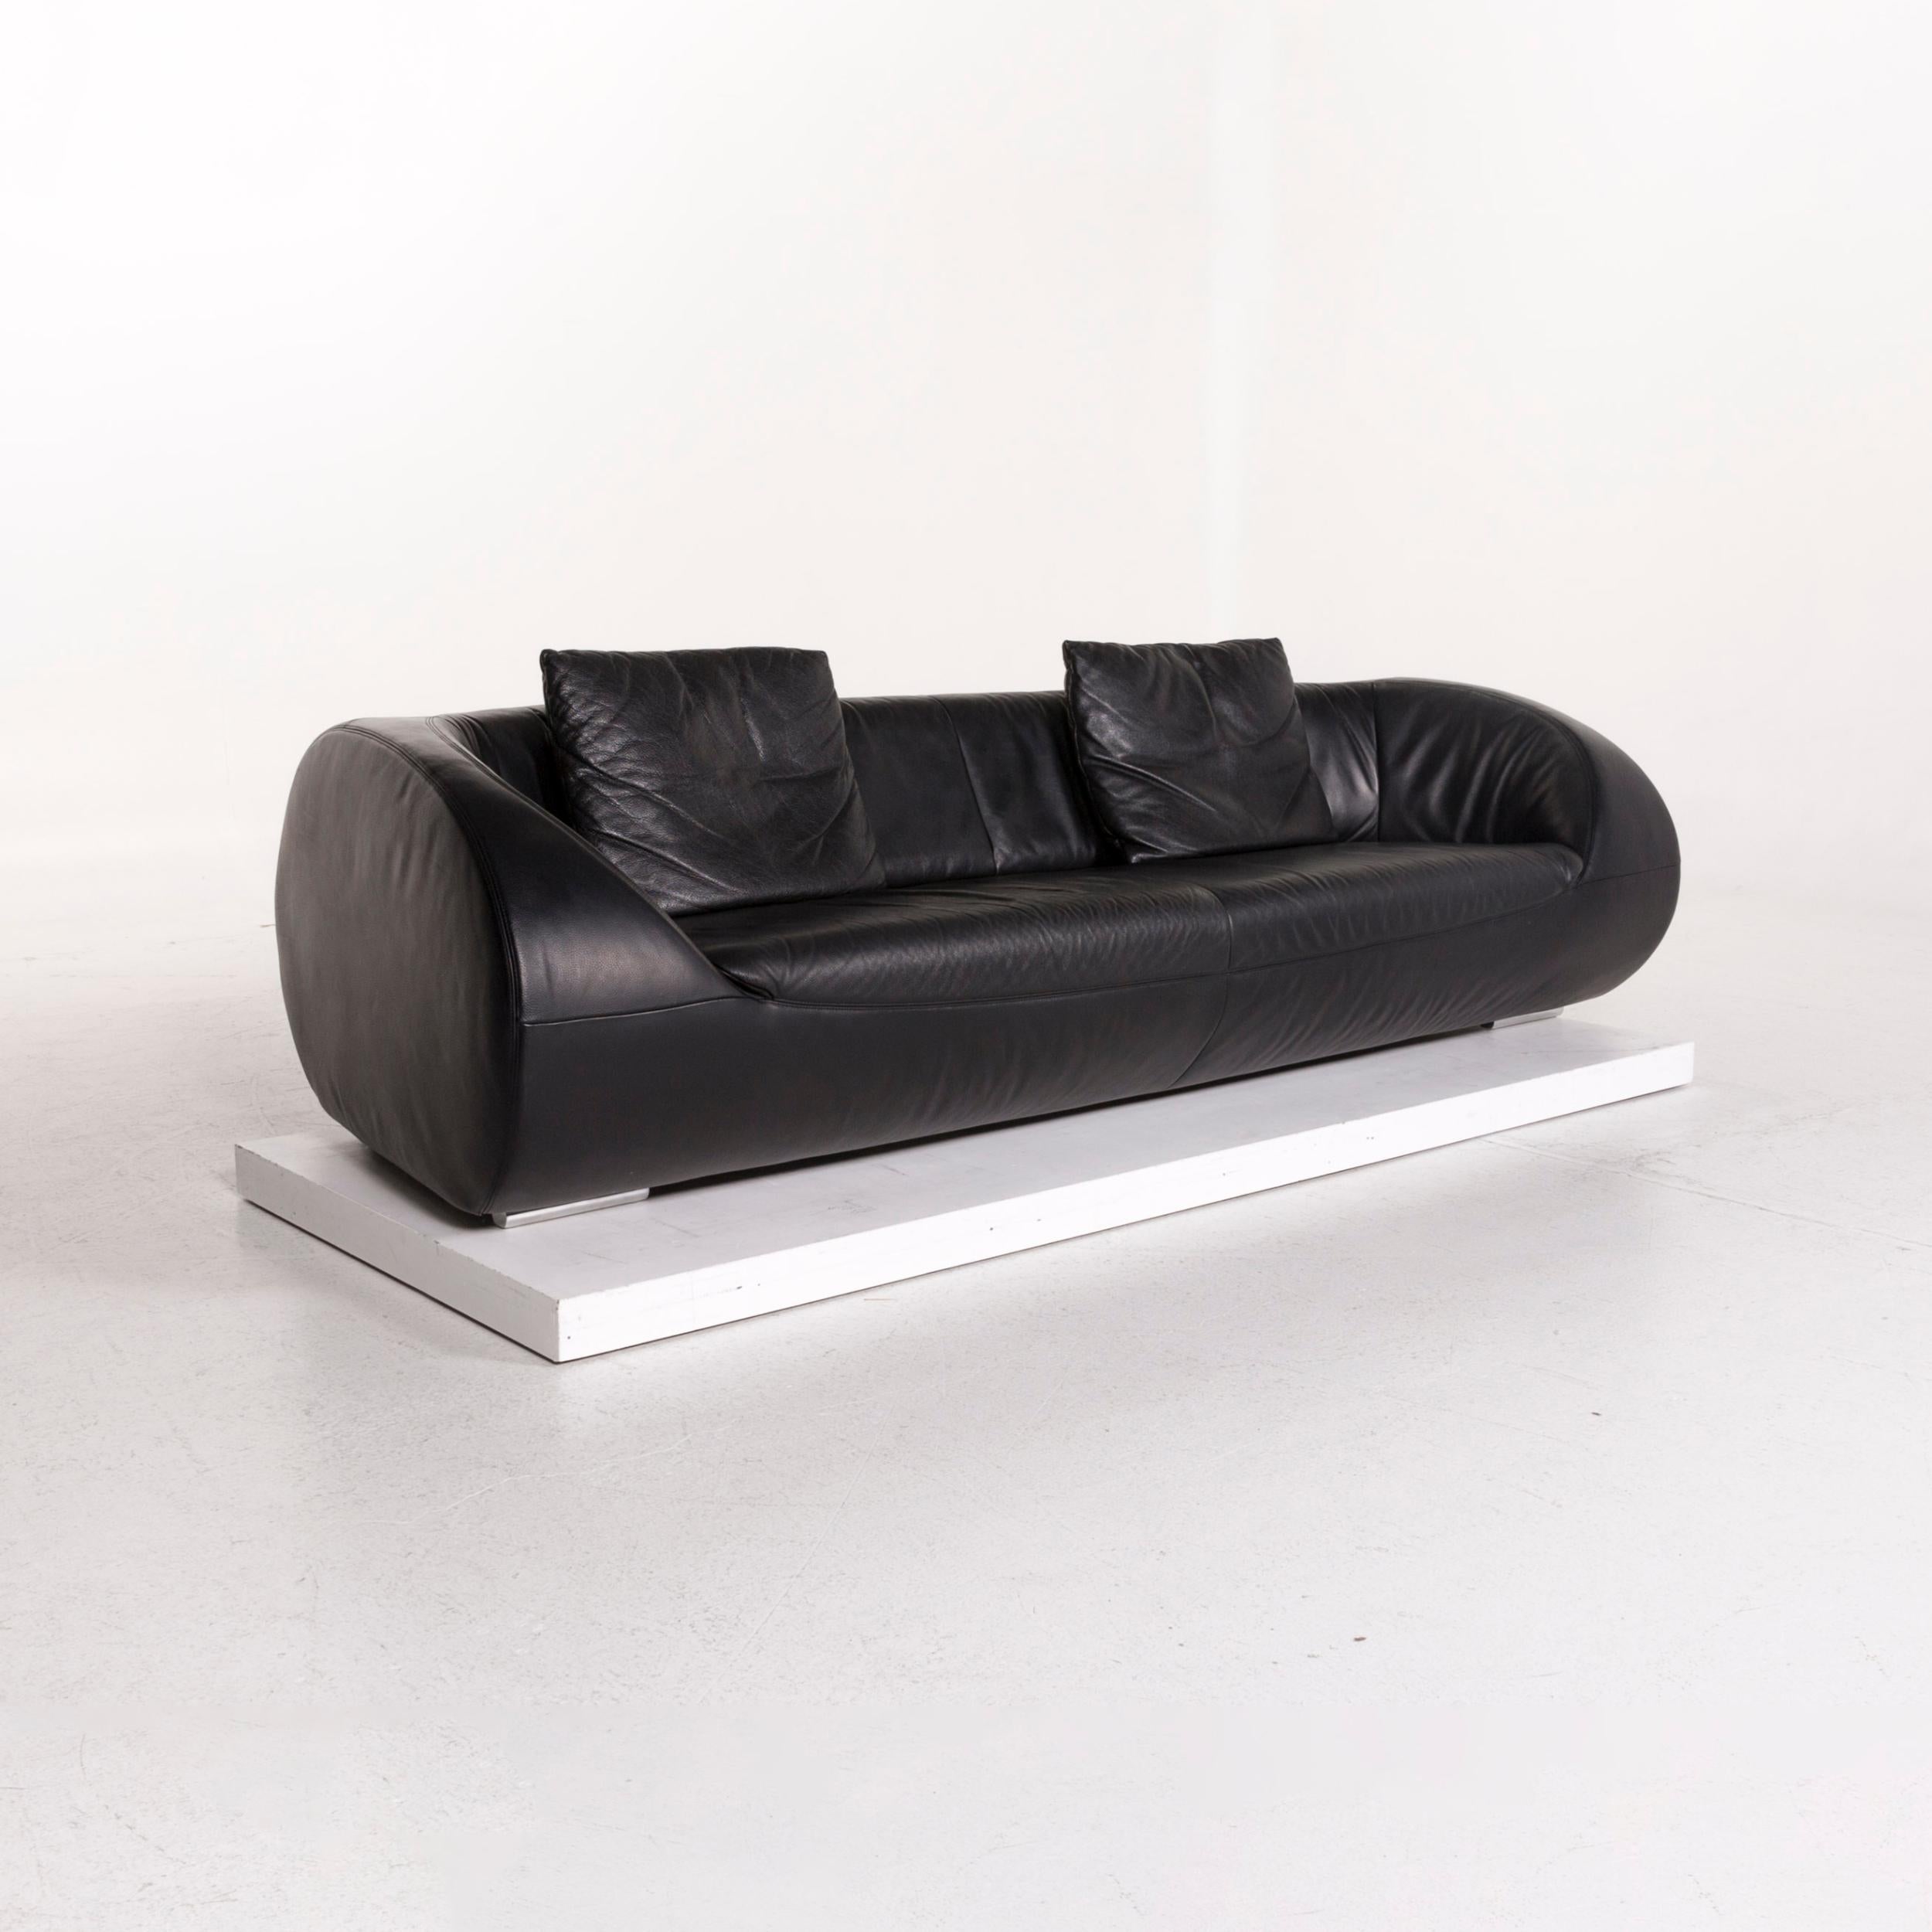 Koinor Pearl Leather Sofa Set Black 1 Three-Seat 1 Stool 2